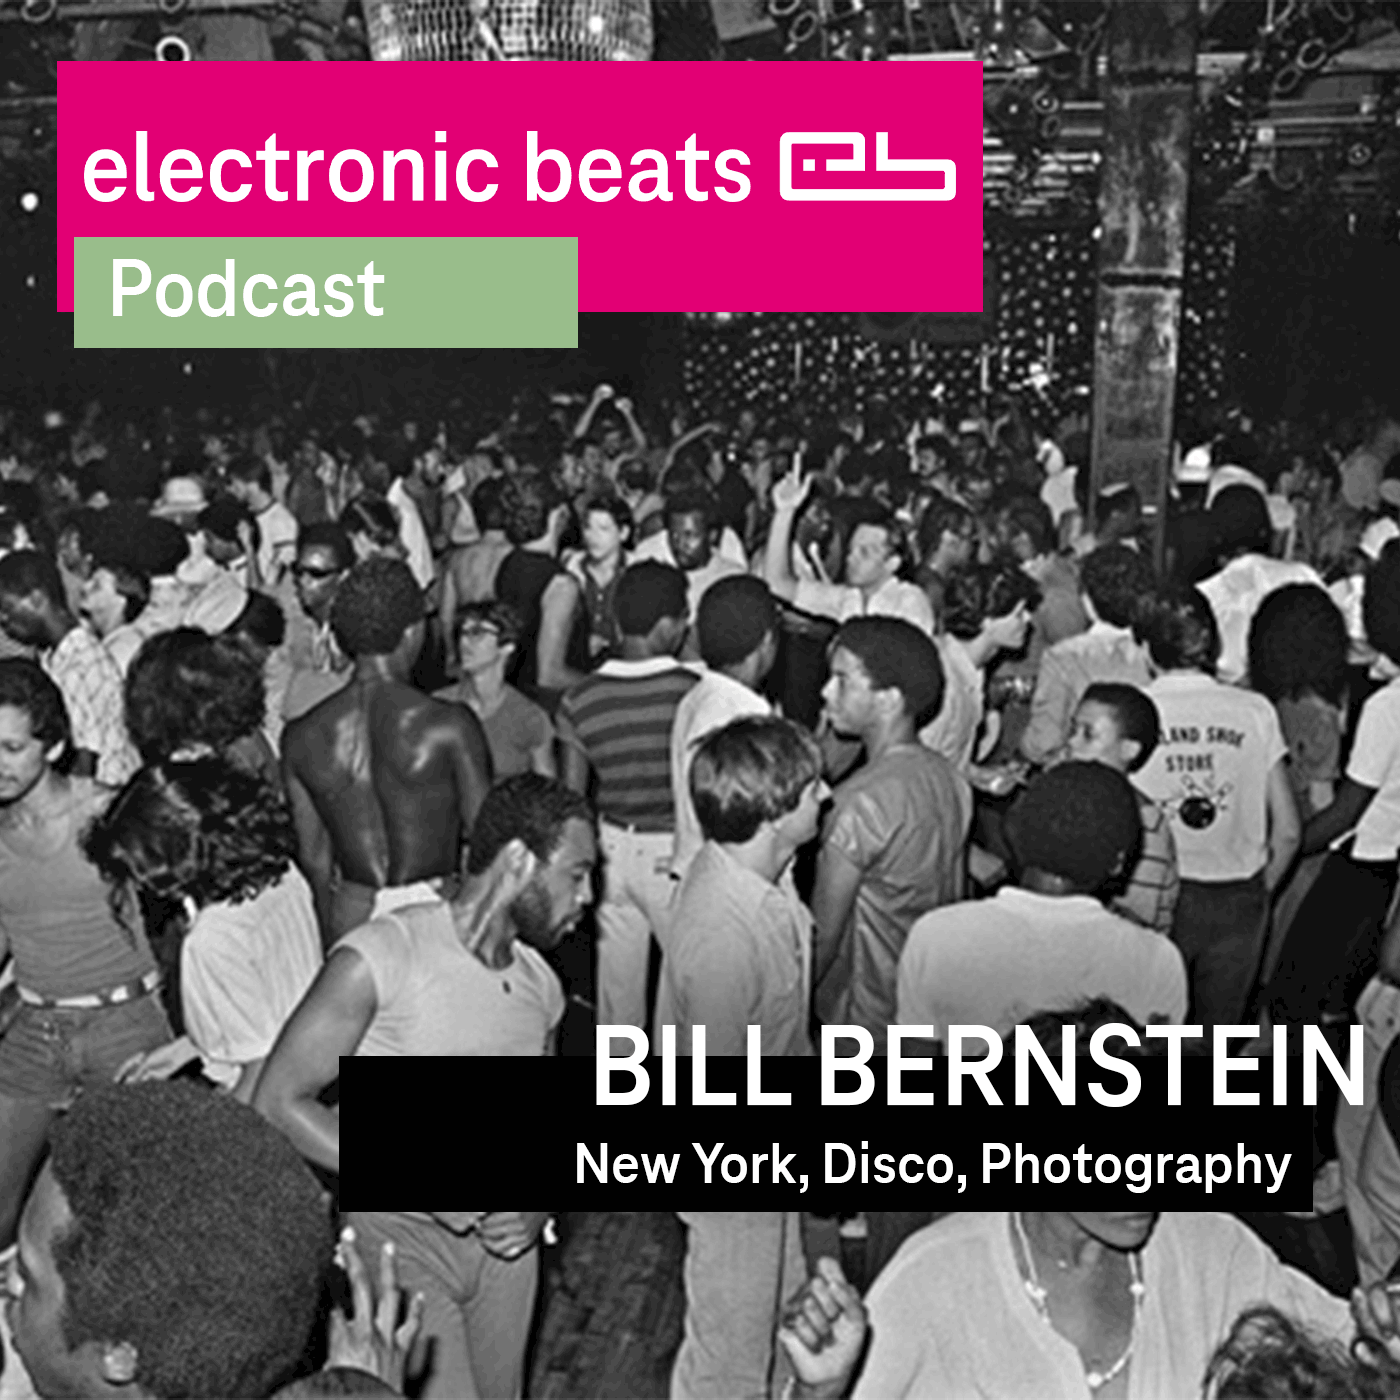 Bill Bernstein - New York, Disco & Photography